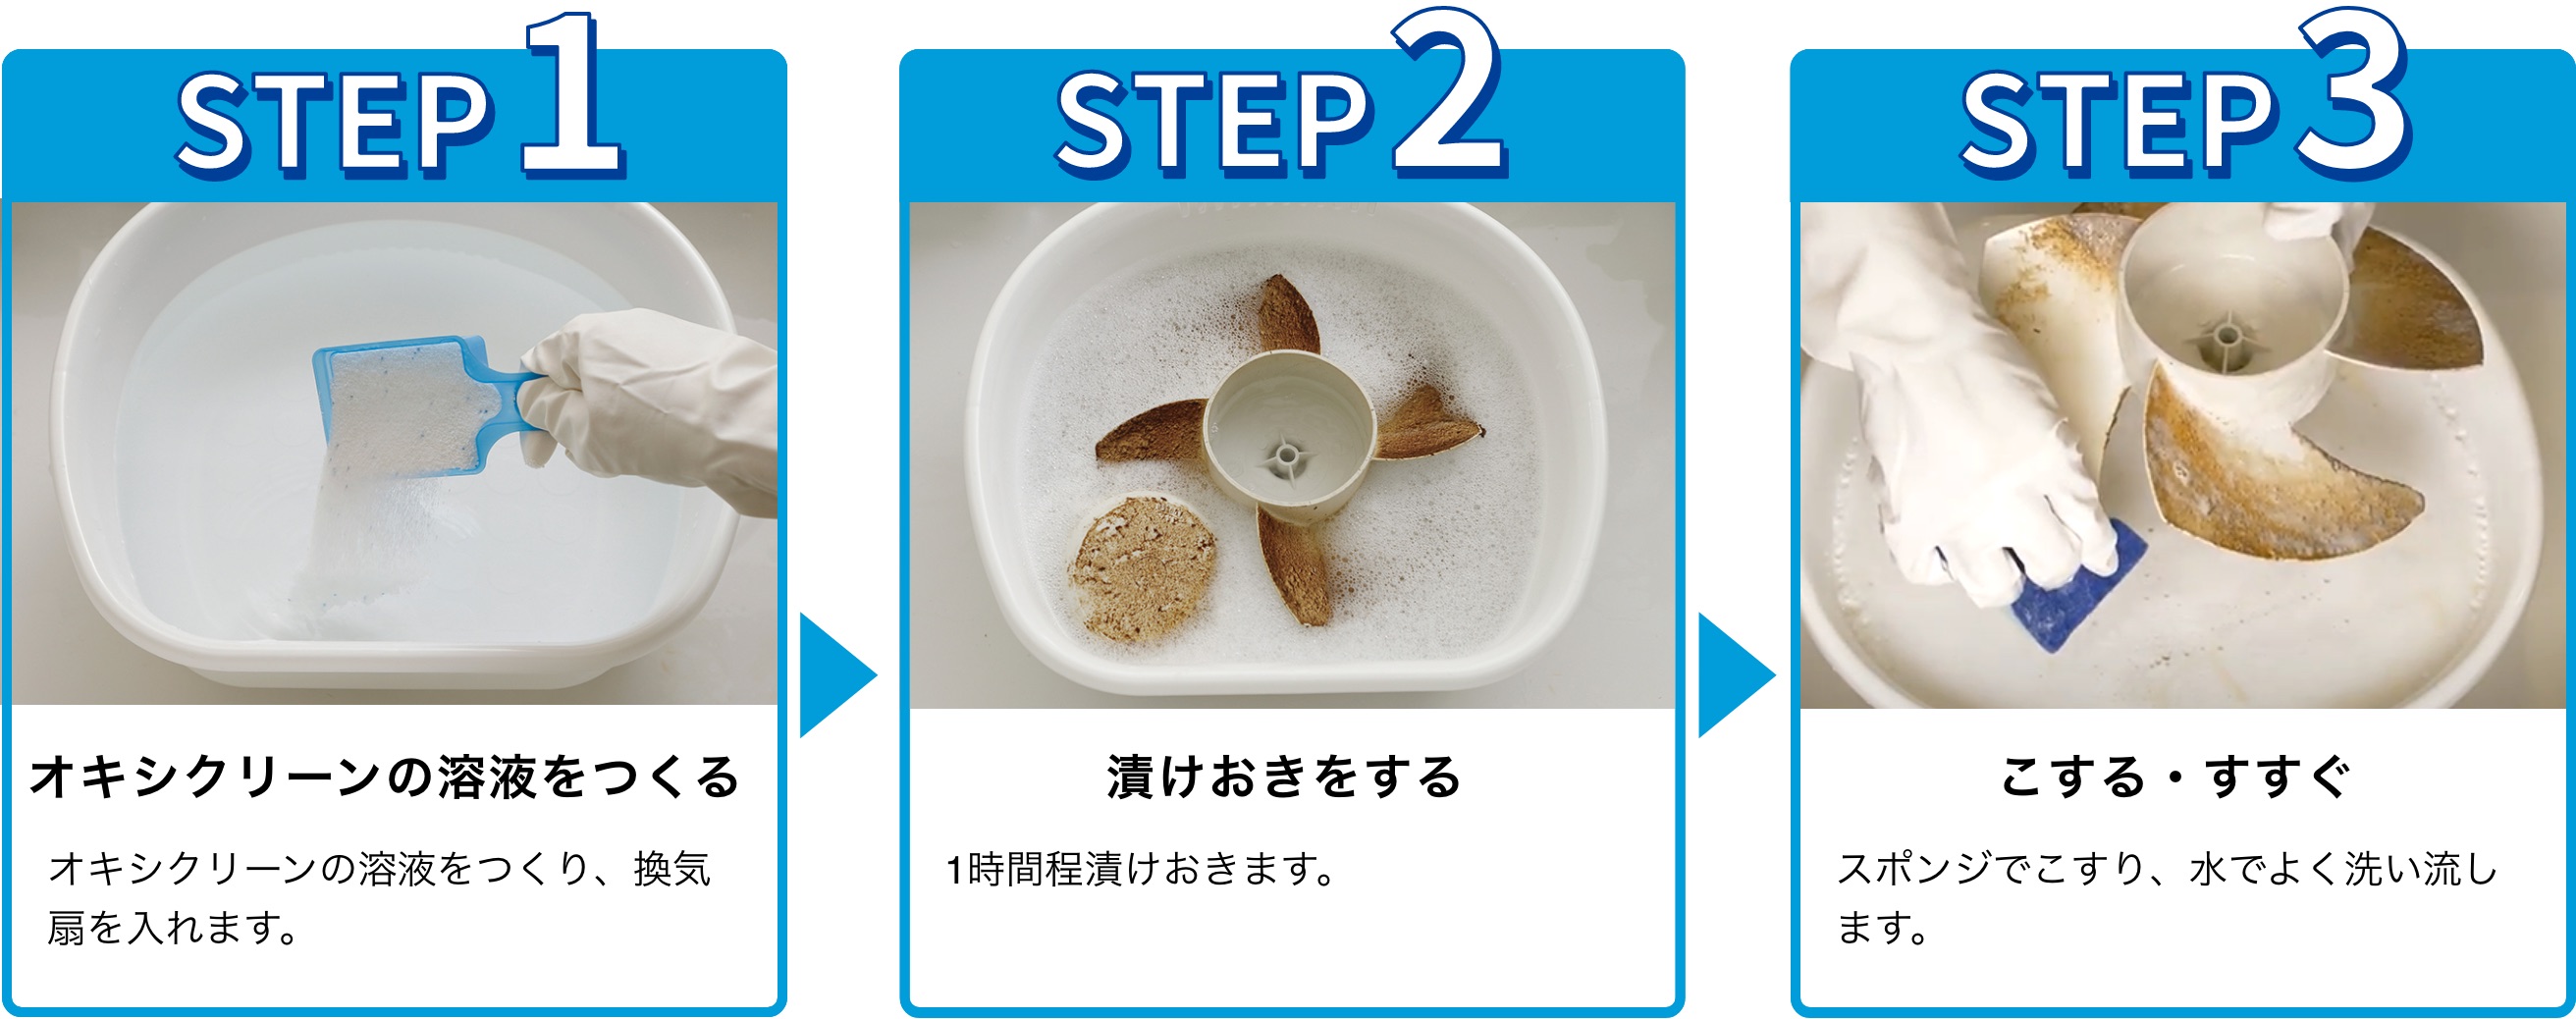 使用手順：1.オキシクリーン溶液をつくる。オキシクリーン溶液をつくり、換気扇を入れます。 2.漬けおきをする。漬けおきをする。3.こする・すすぐ。スポンジでこすり、水でよく洗い流します。